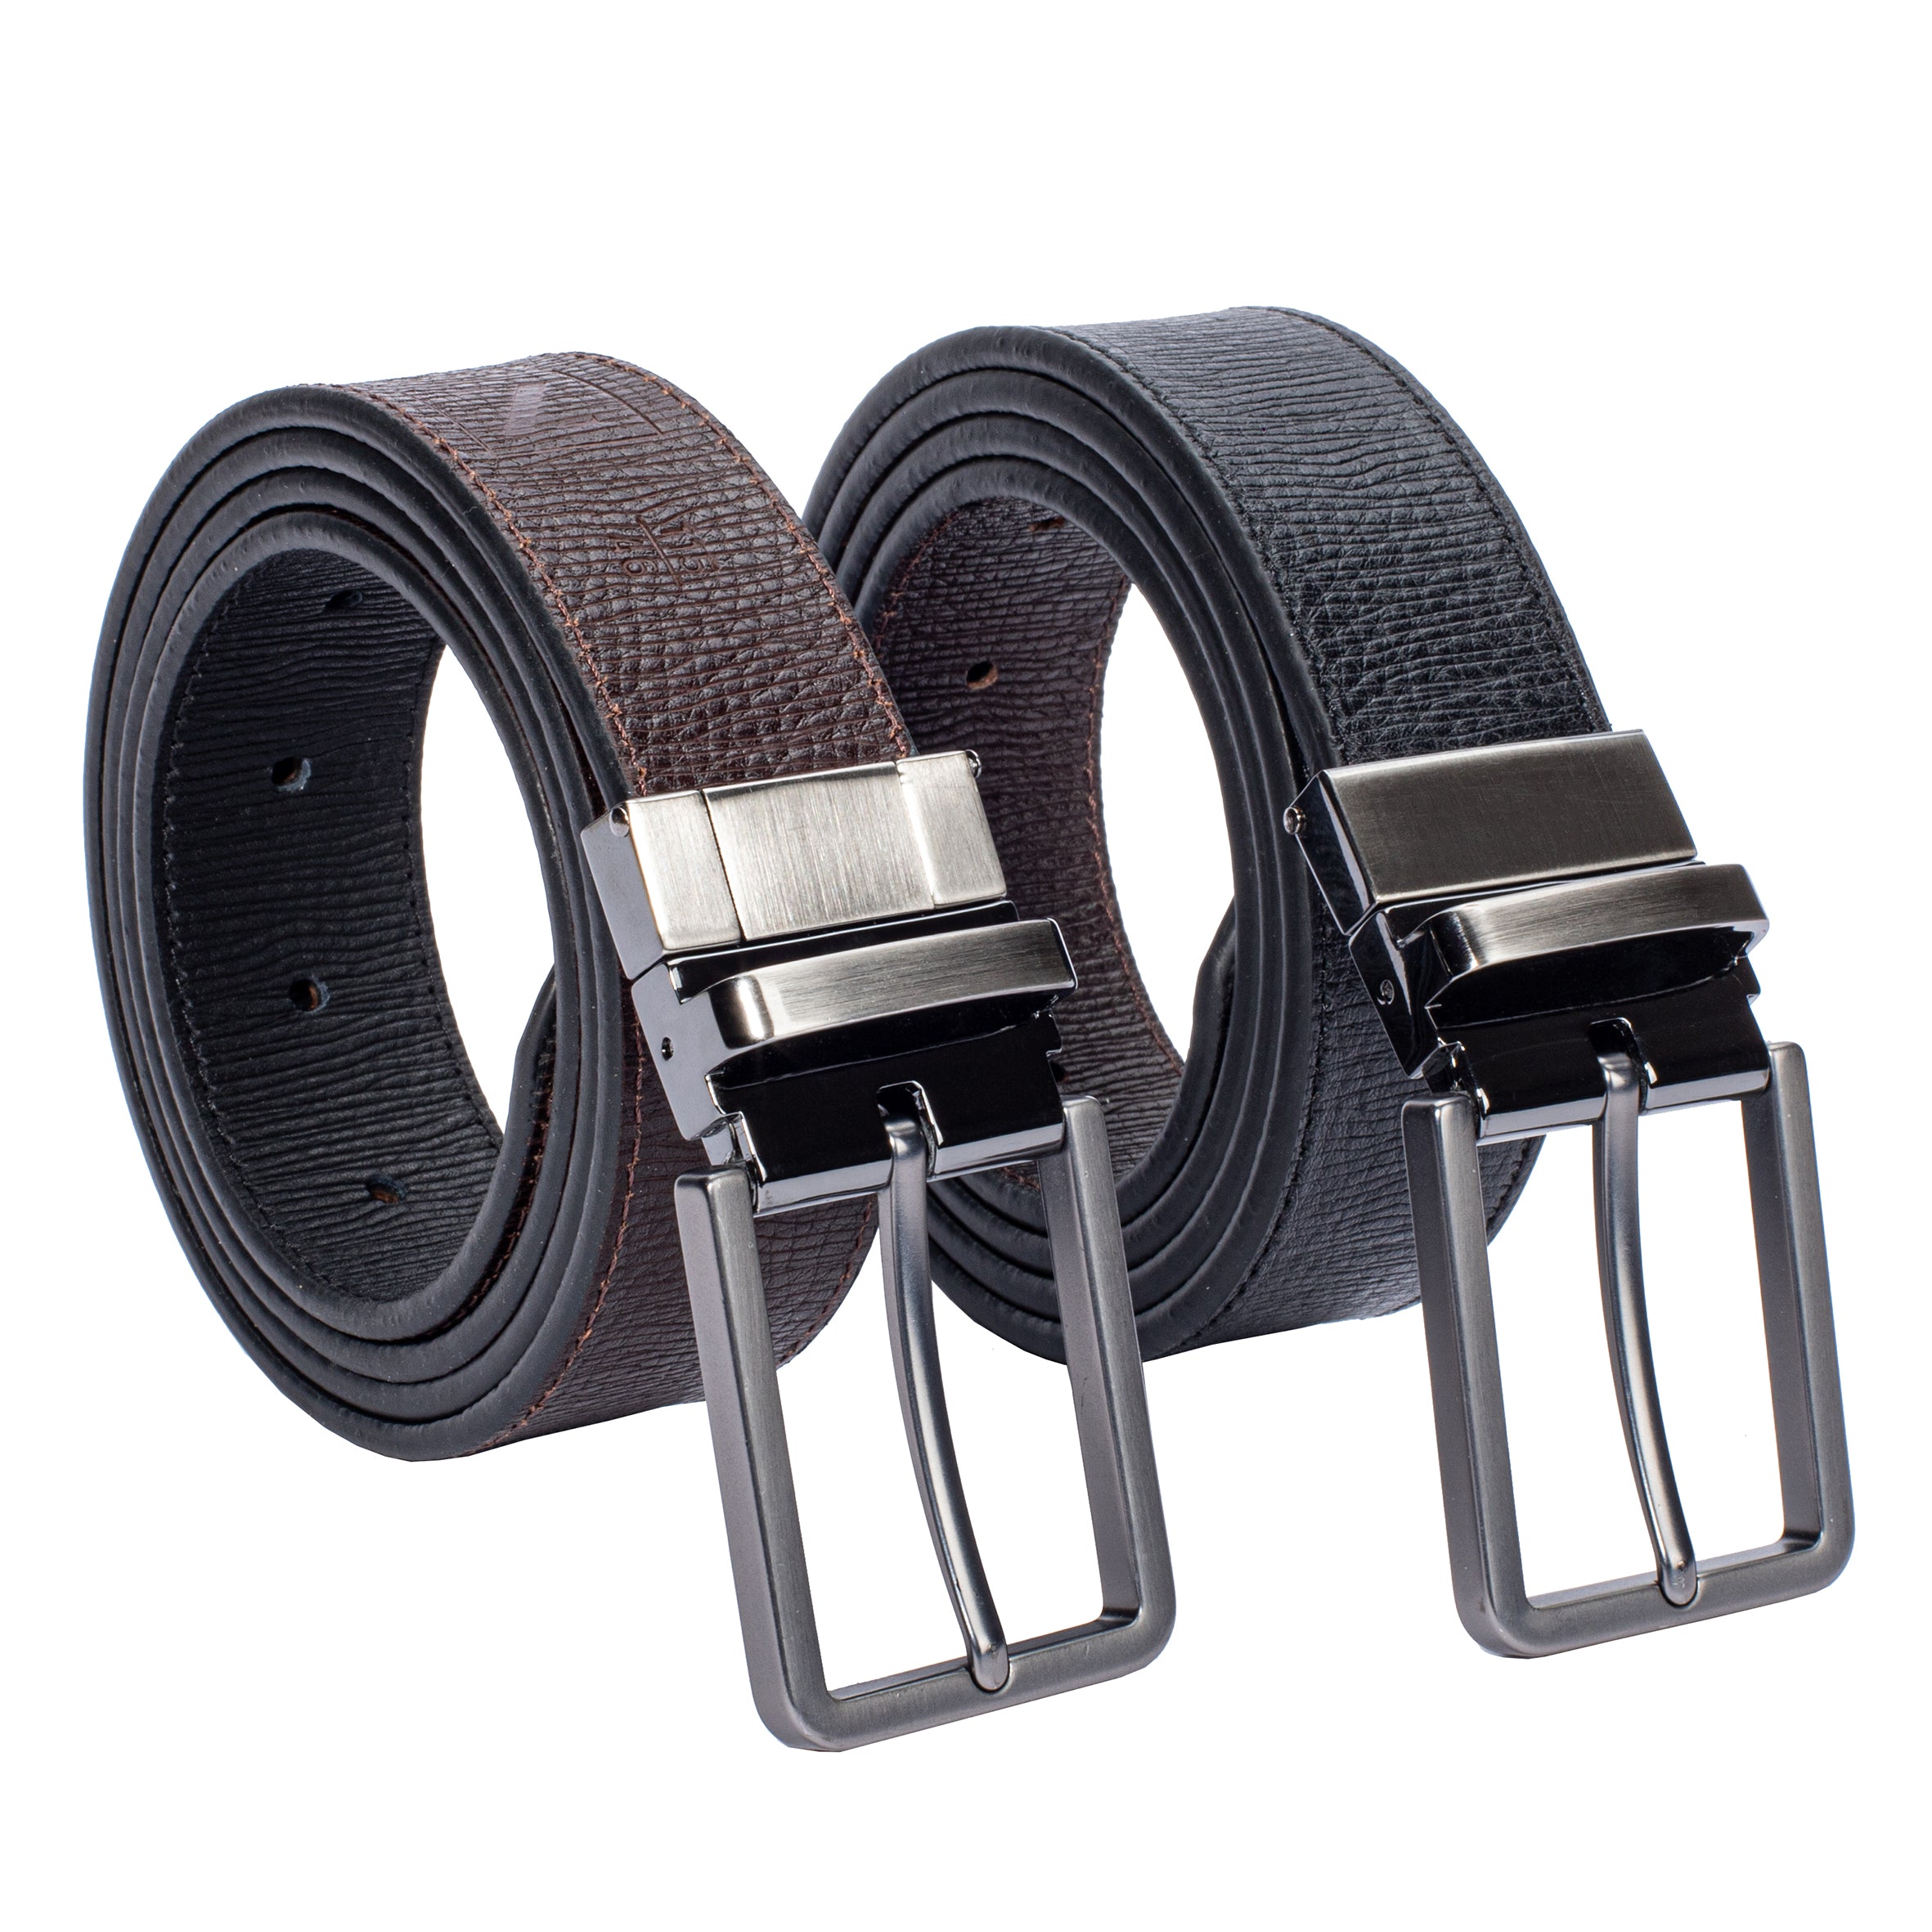 Buy a Men's Handmade Leather Belt, fully reversible designer belts. – LUC8K  Co